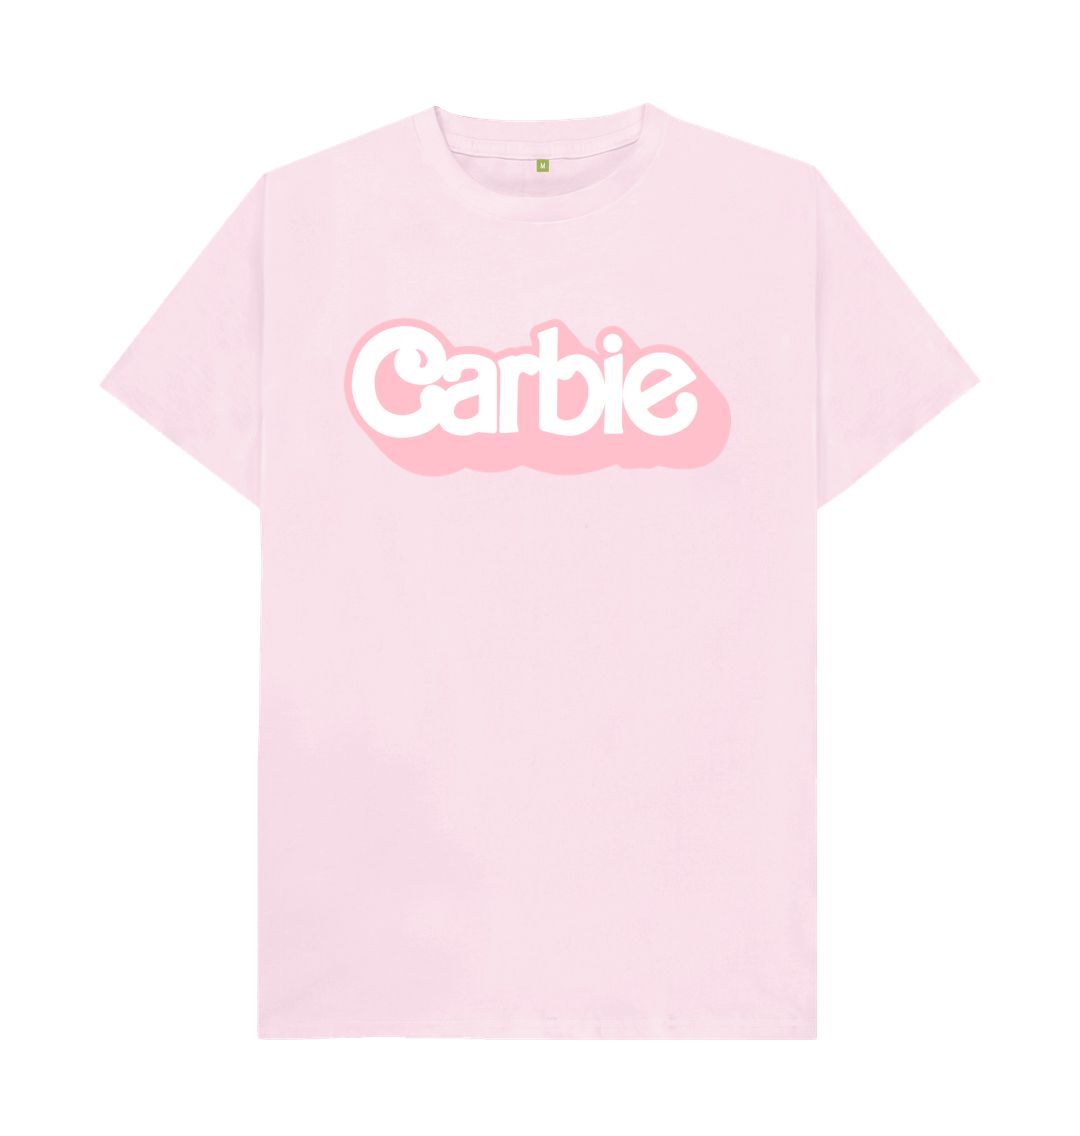 Pink Carbie